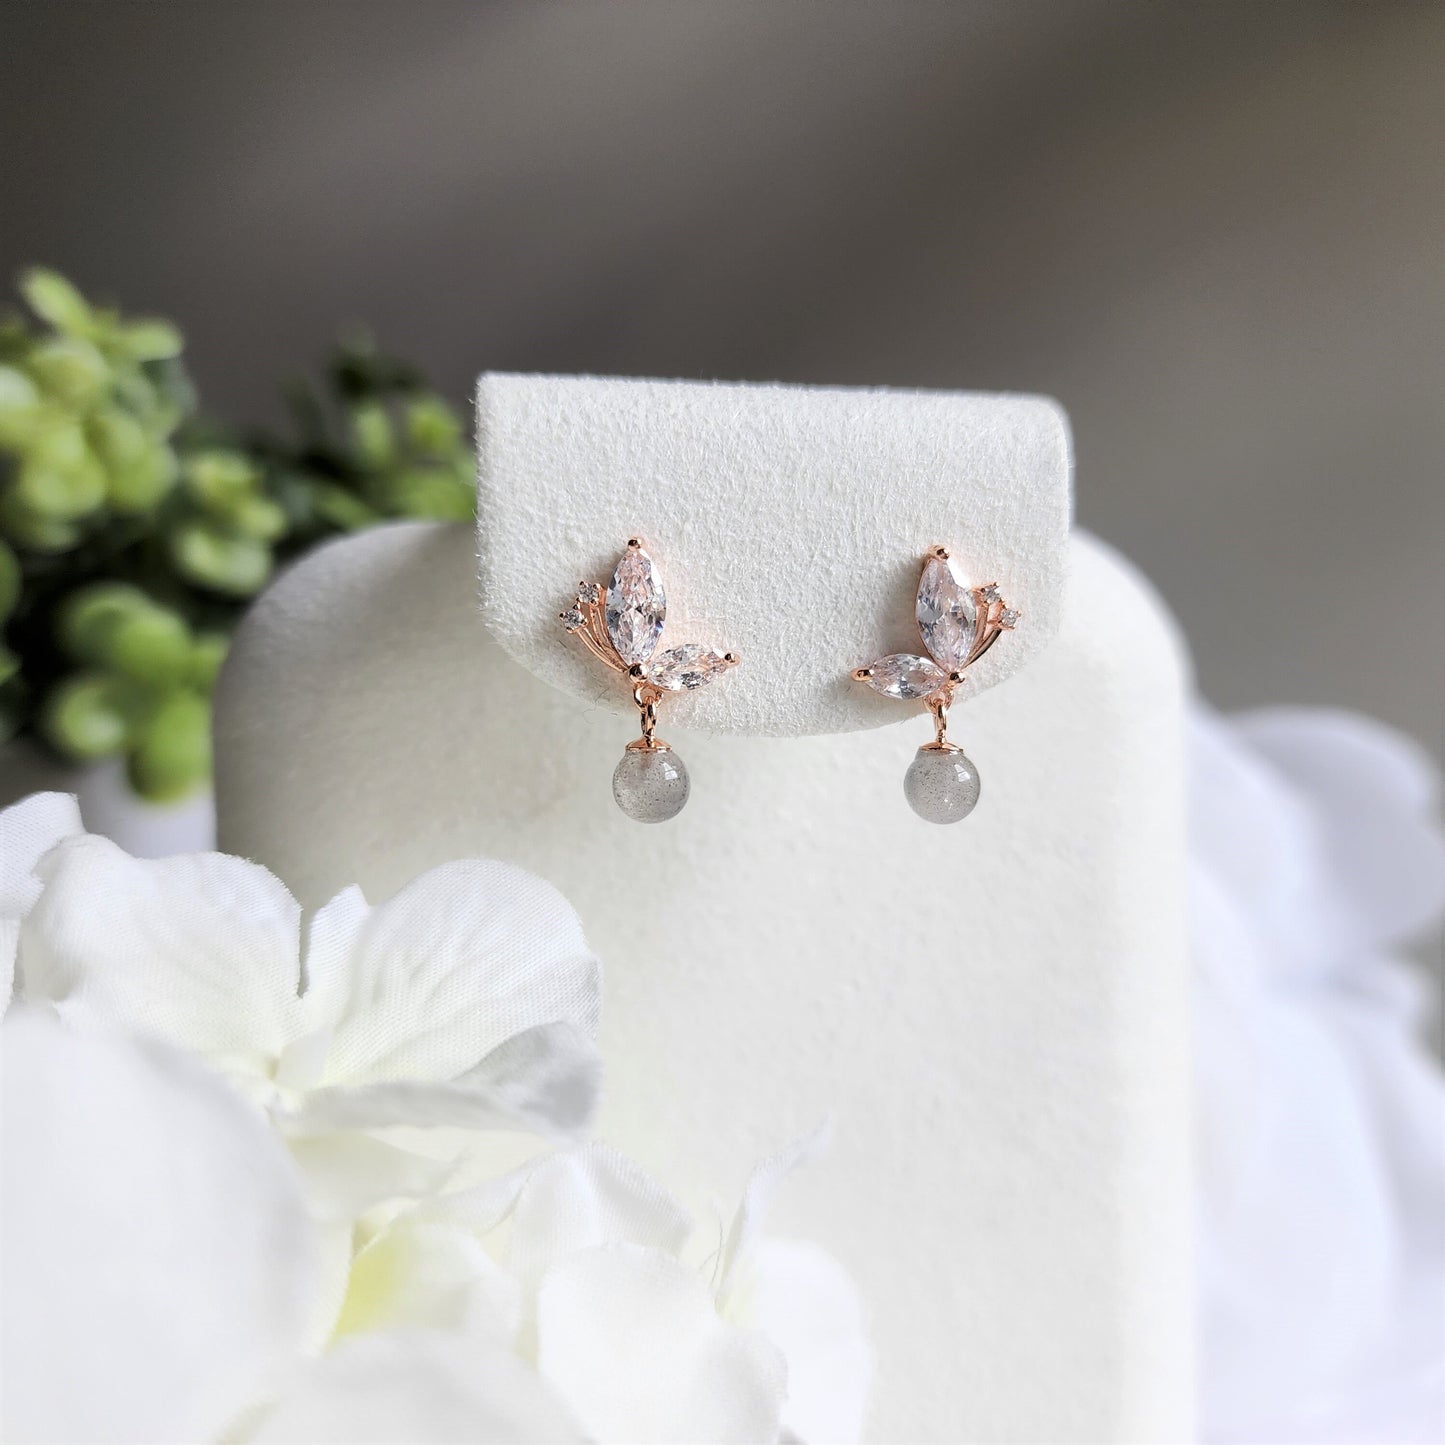 Moon stone butterfly earrings, Rose gold vermeil earrings, 925s silver earrings, gift for her